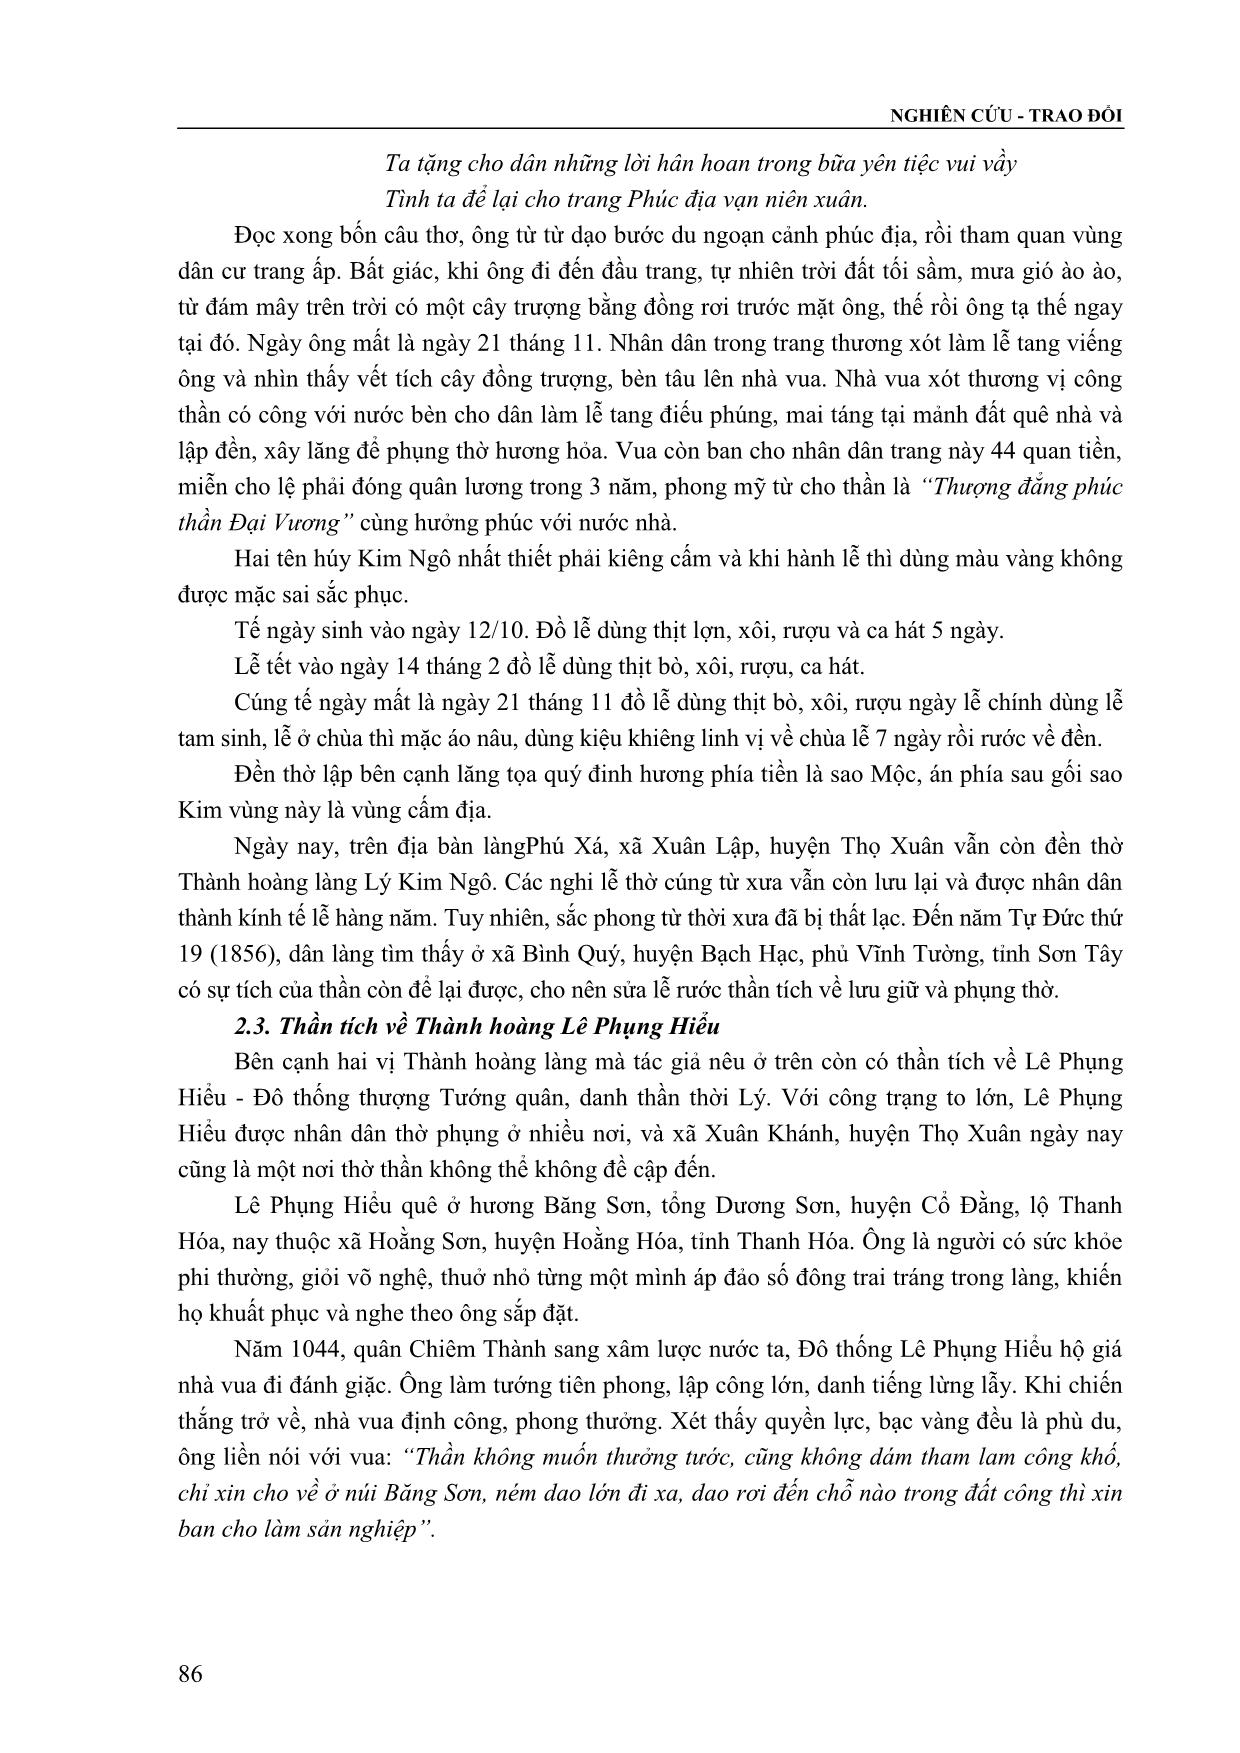 Ba vị Thành hoàng thời Lý trên đất Thọ Xuân qua tư liệu thần tích trang 6